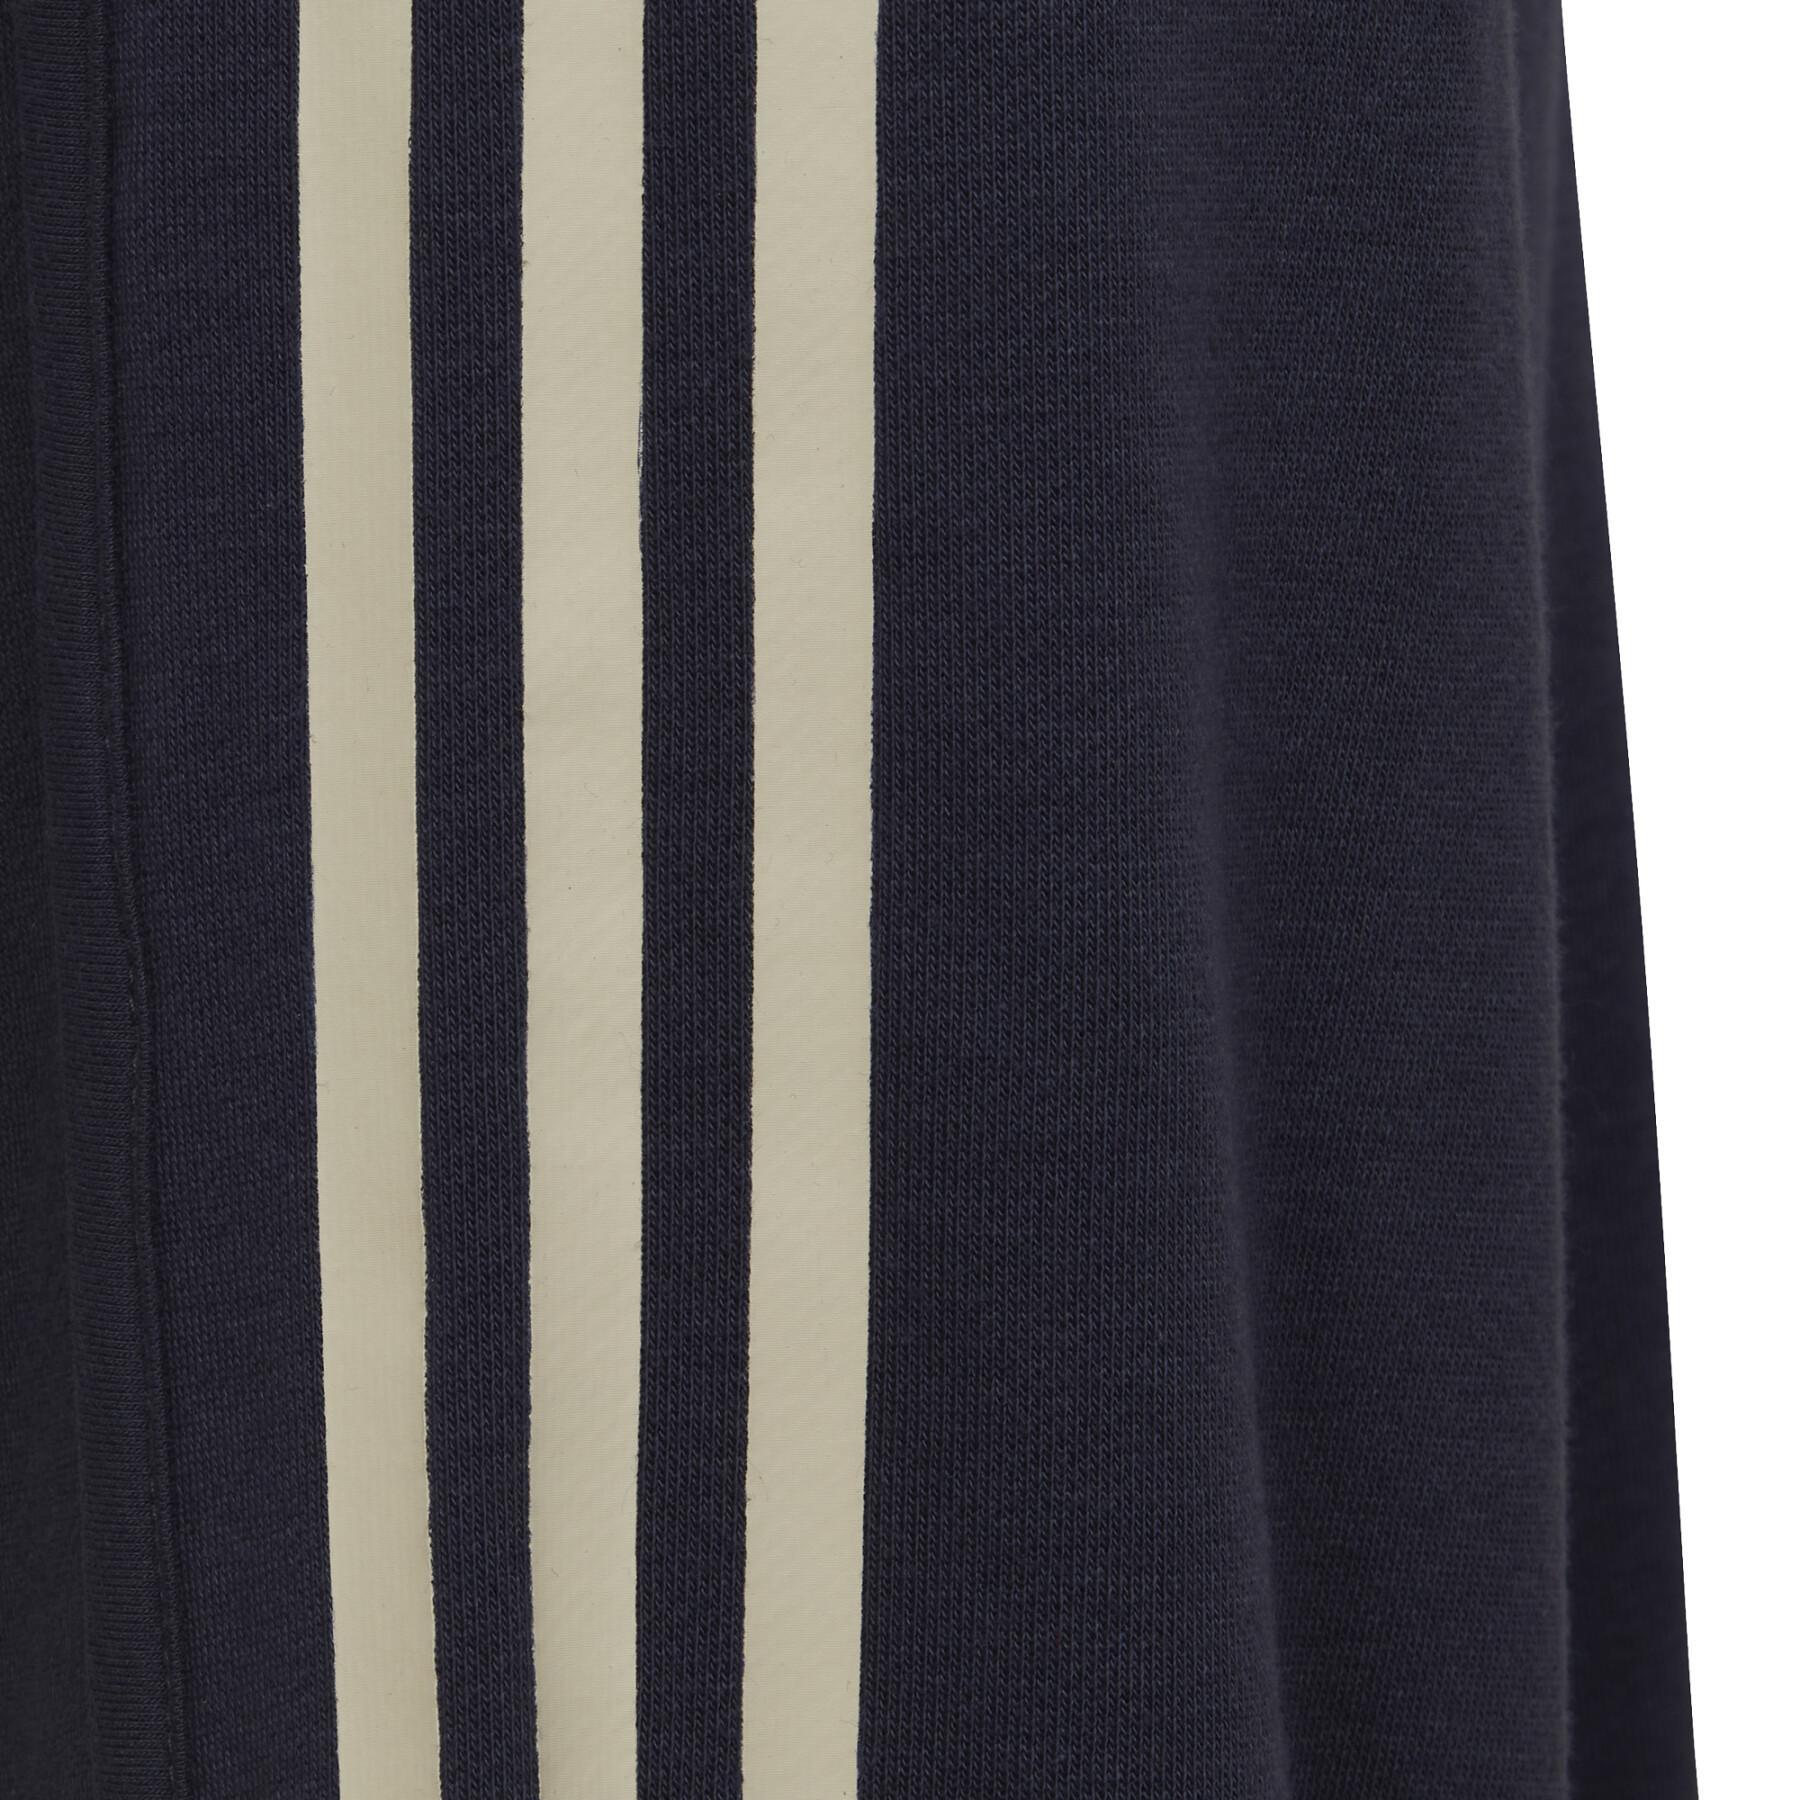 Hose für Mädchen adidas Power 3-Stripes Cotton